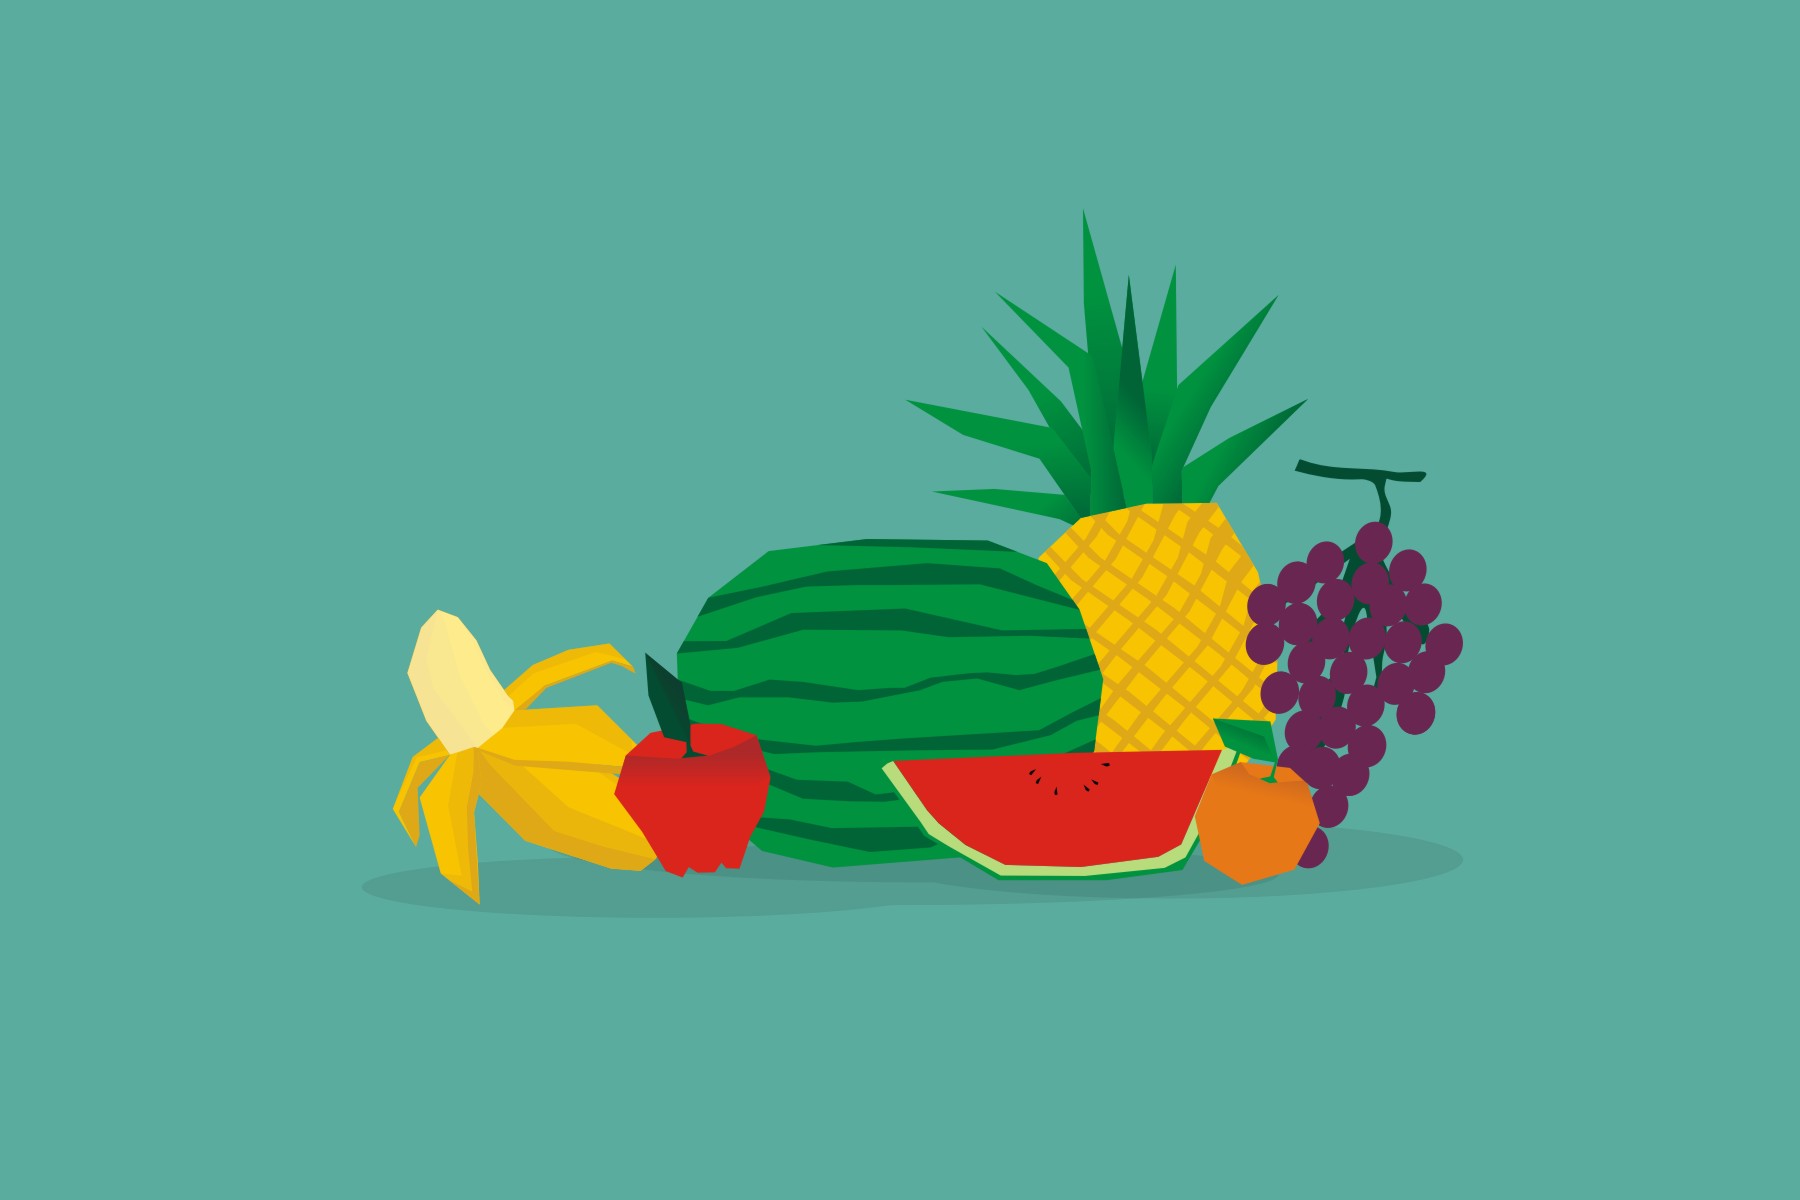 Ini buah dan sayuran paling ampuh turunkan berat badan kamu, coba deh!